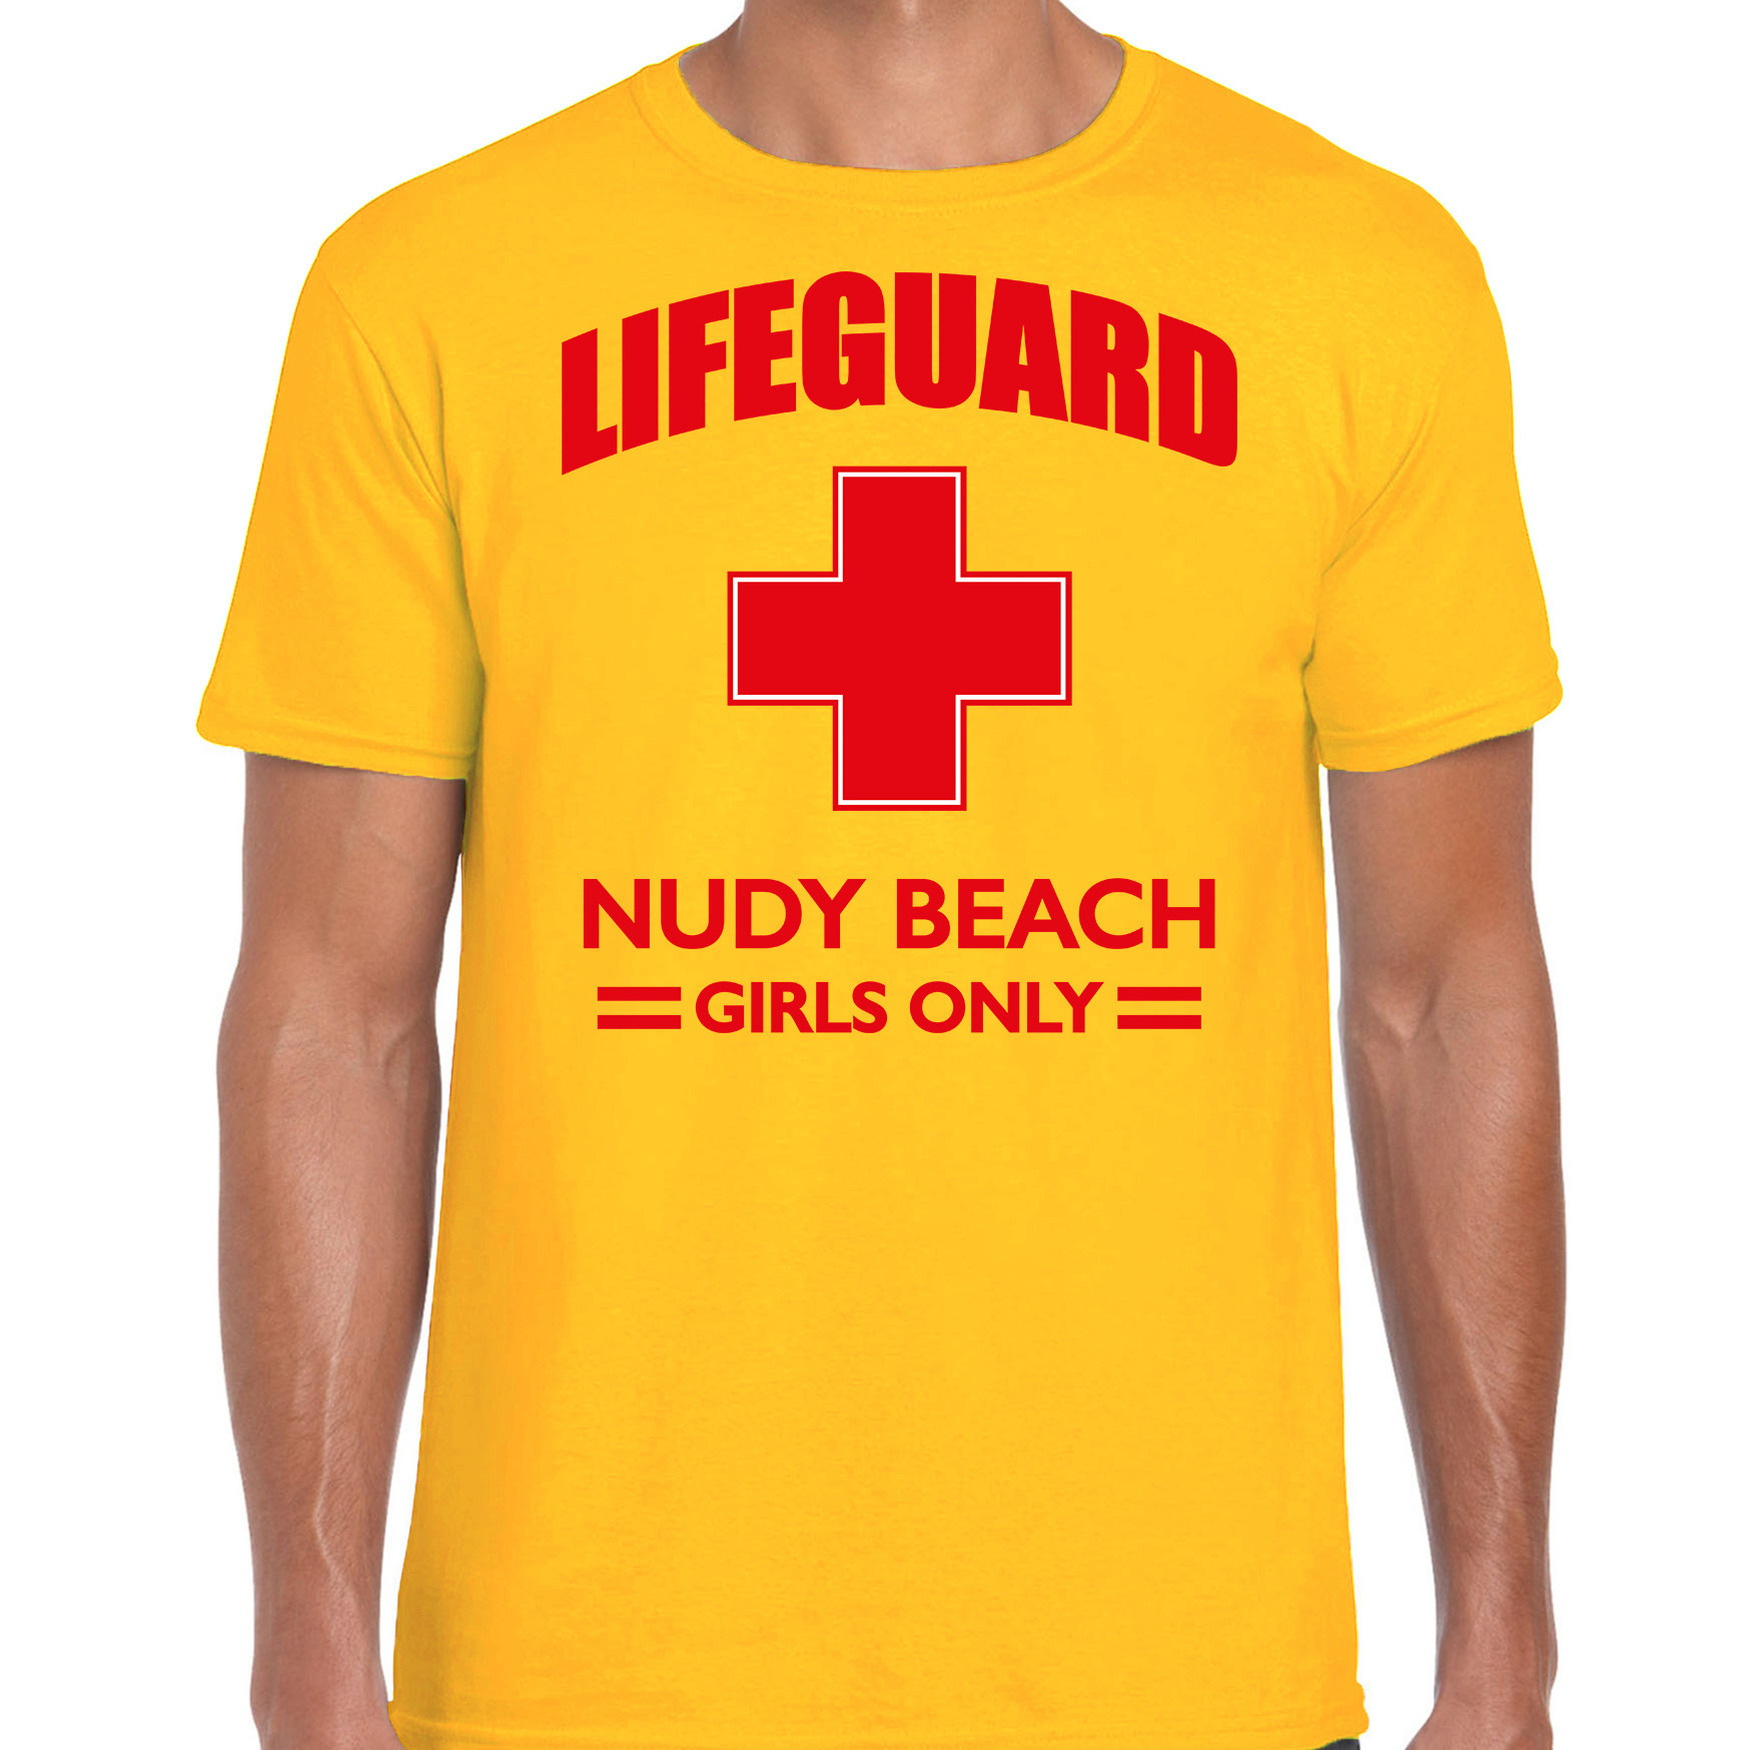 Carnavalskleding reddingsbrigade-lifeguard Nudy Beach girls only shirt geel-voor bedrukking heren